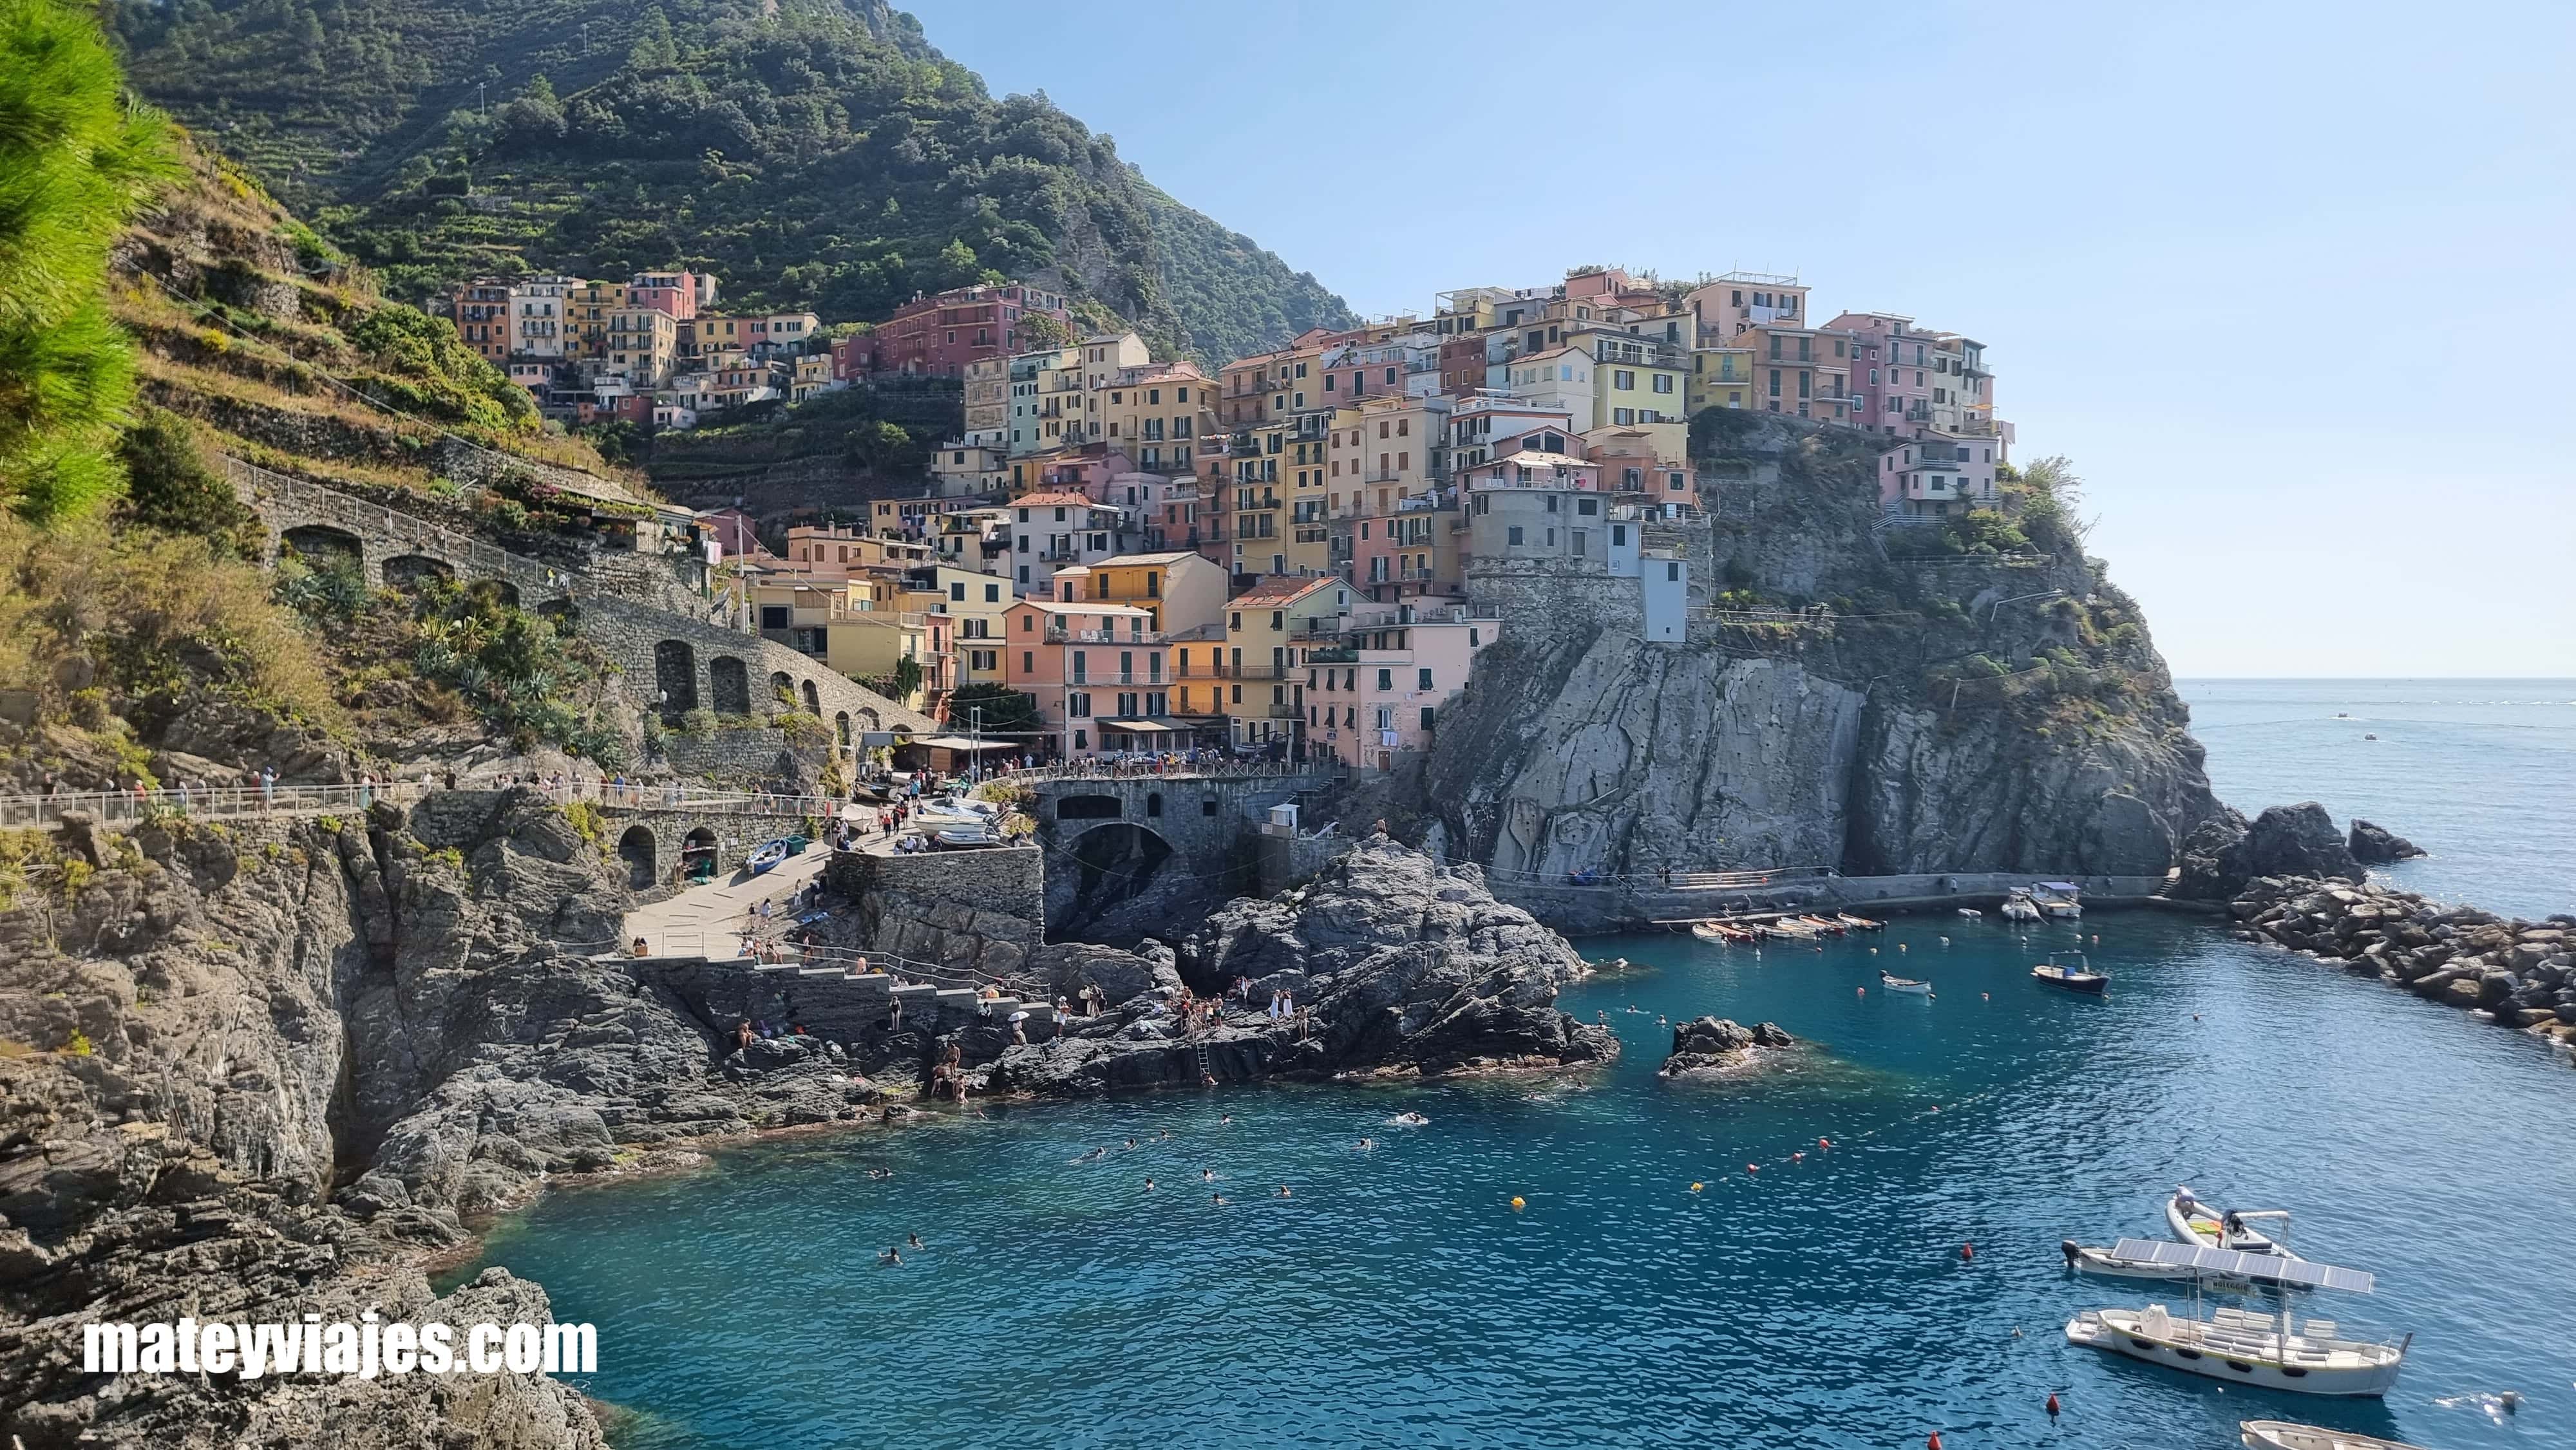 Que hacer en Cinque Terre, una tierra prometida!